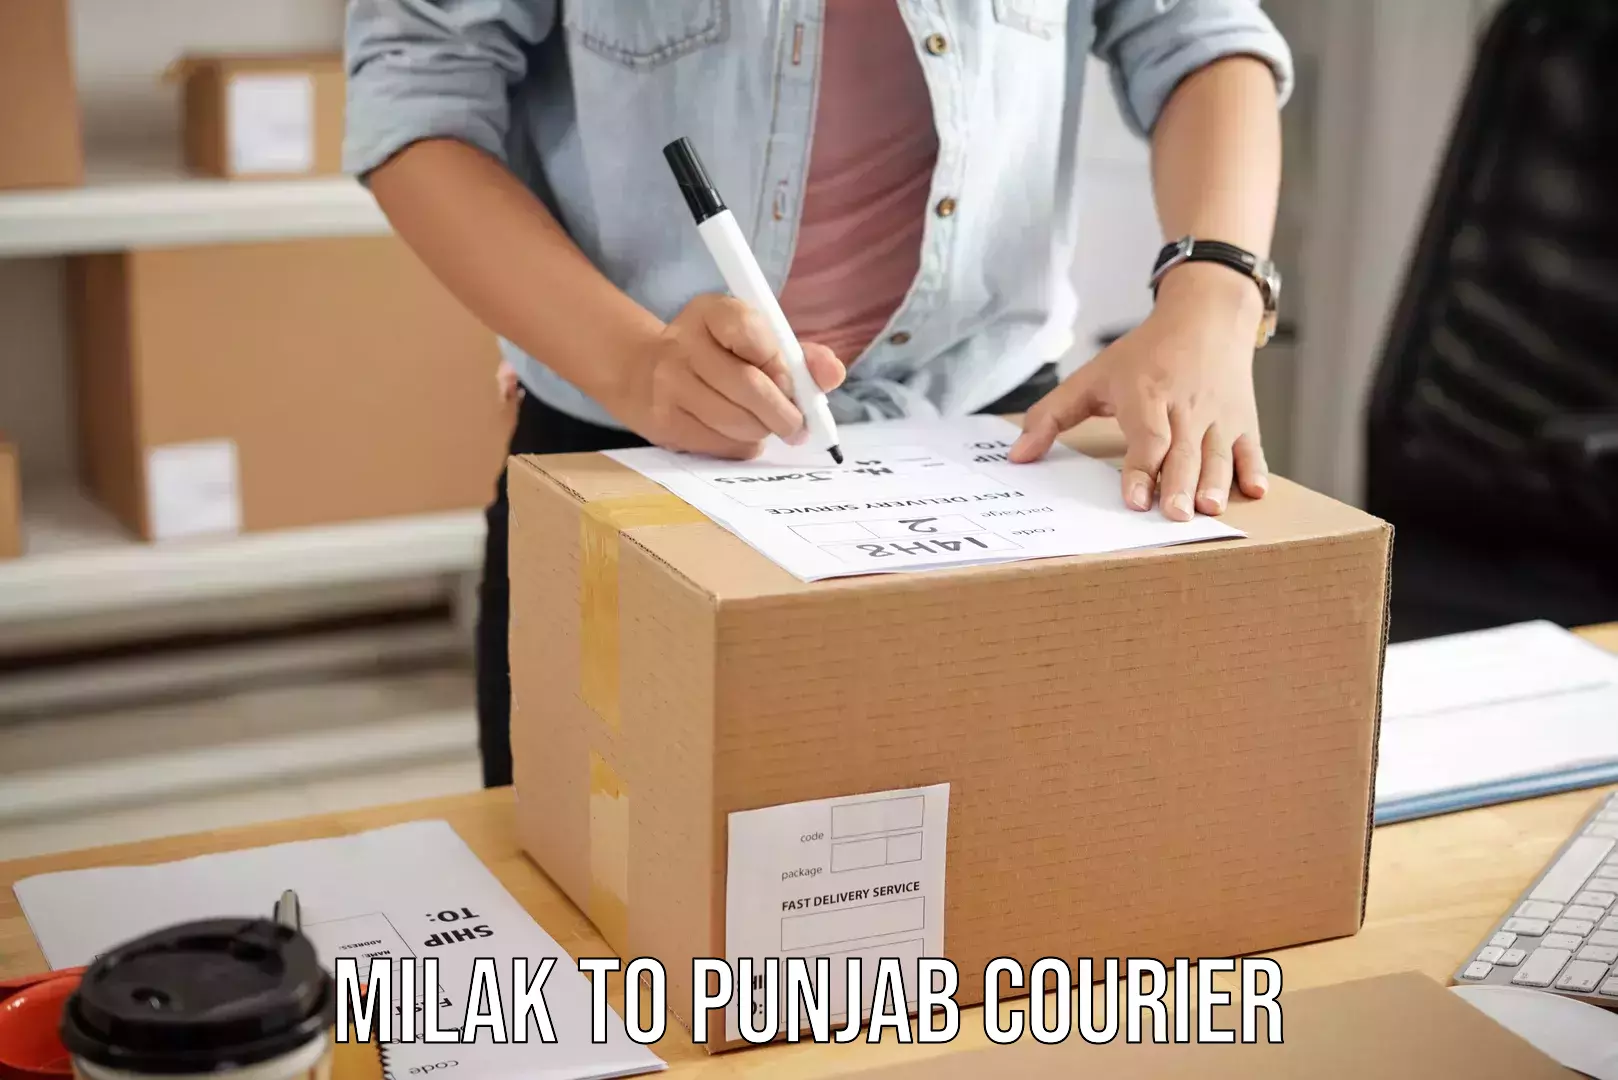 Baggage relocation service Milak to Punjab